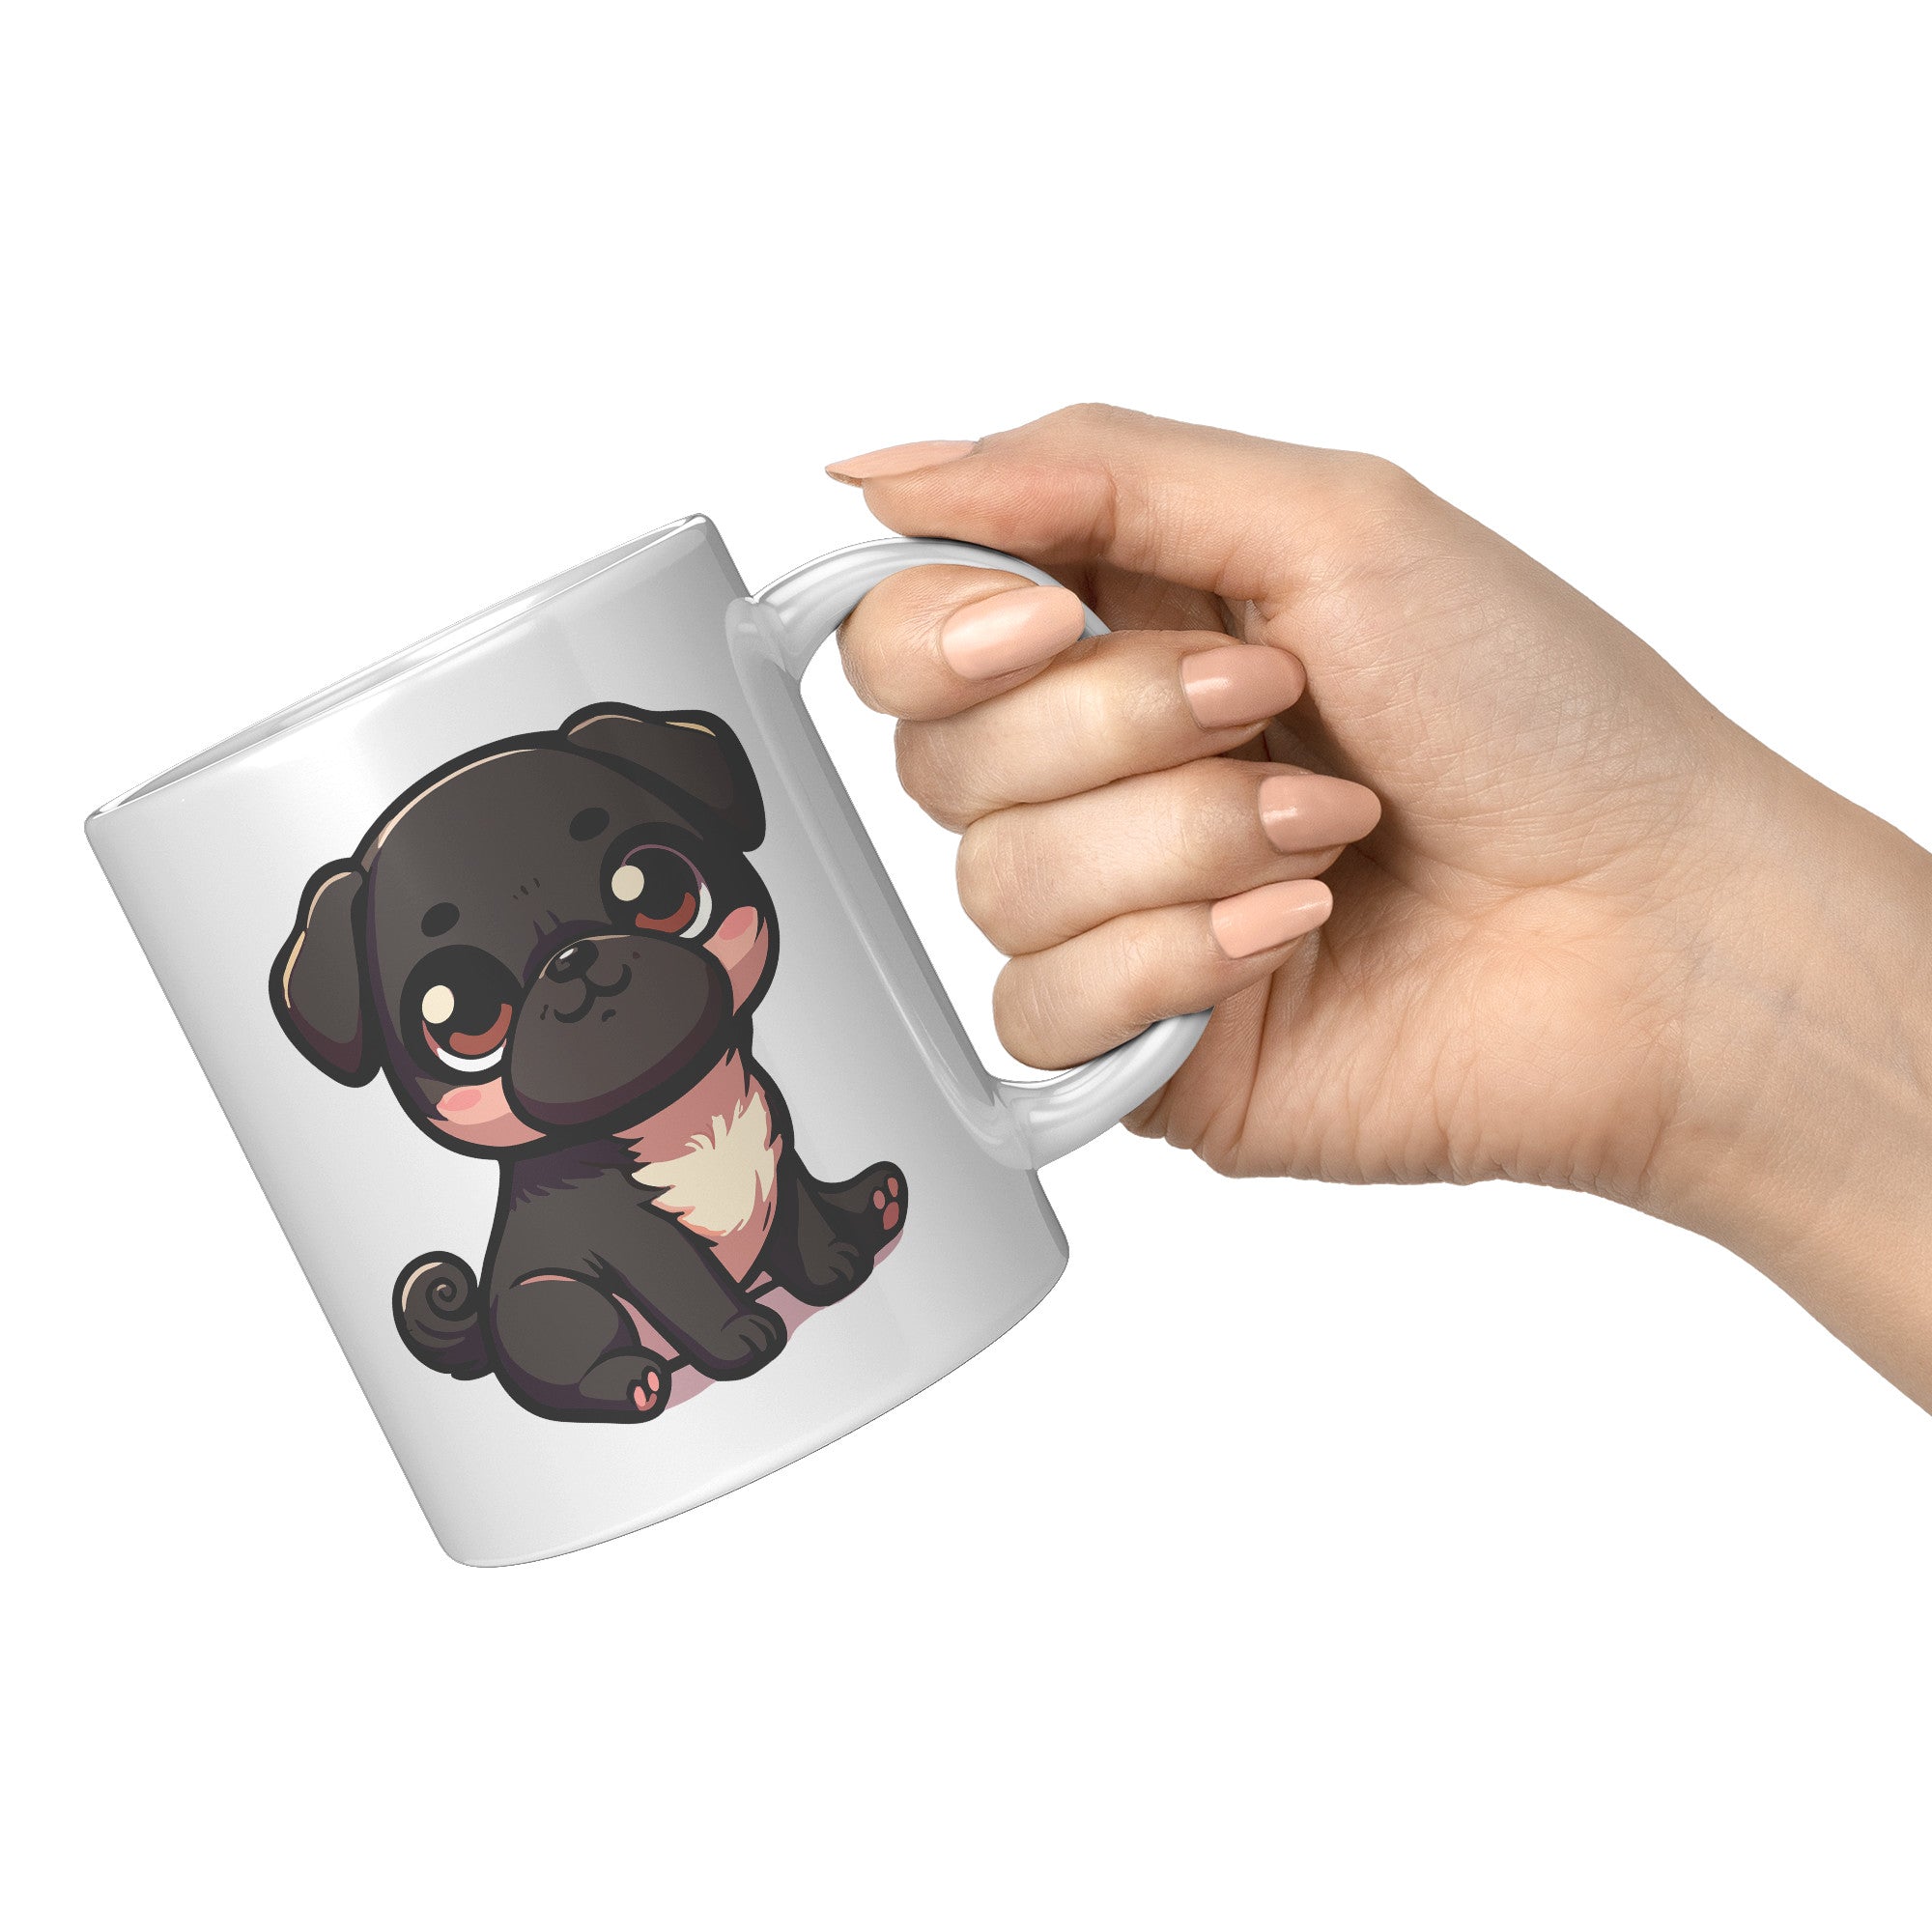 11oz Adorable Pug Cartoon Coffee Mug - Pug Lover Coffee Mug - Perfect Gift for Pug Owners - Cute Wrinkly Dog Coffee Mug" - V